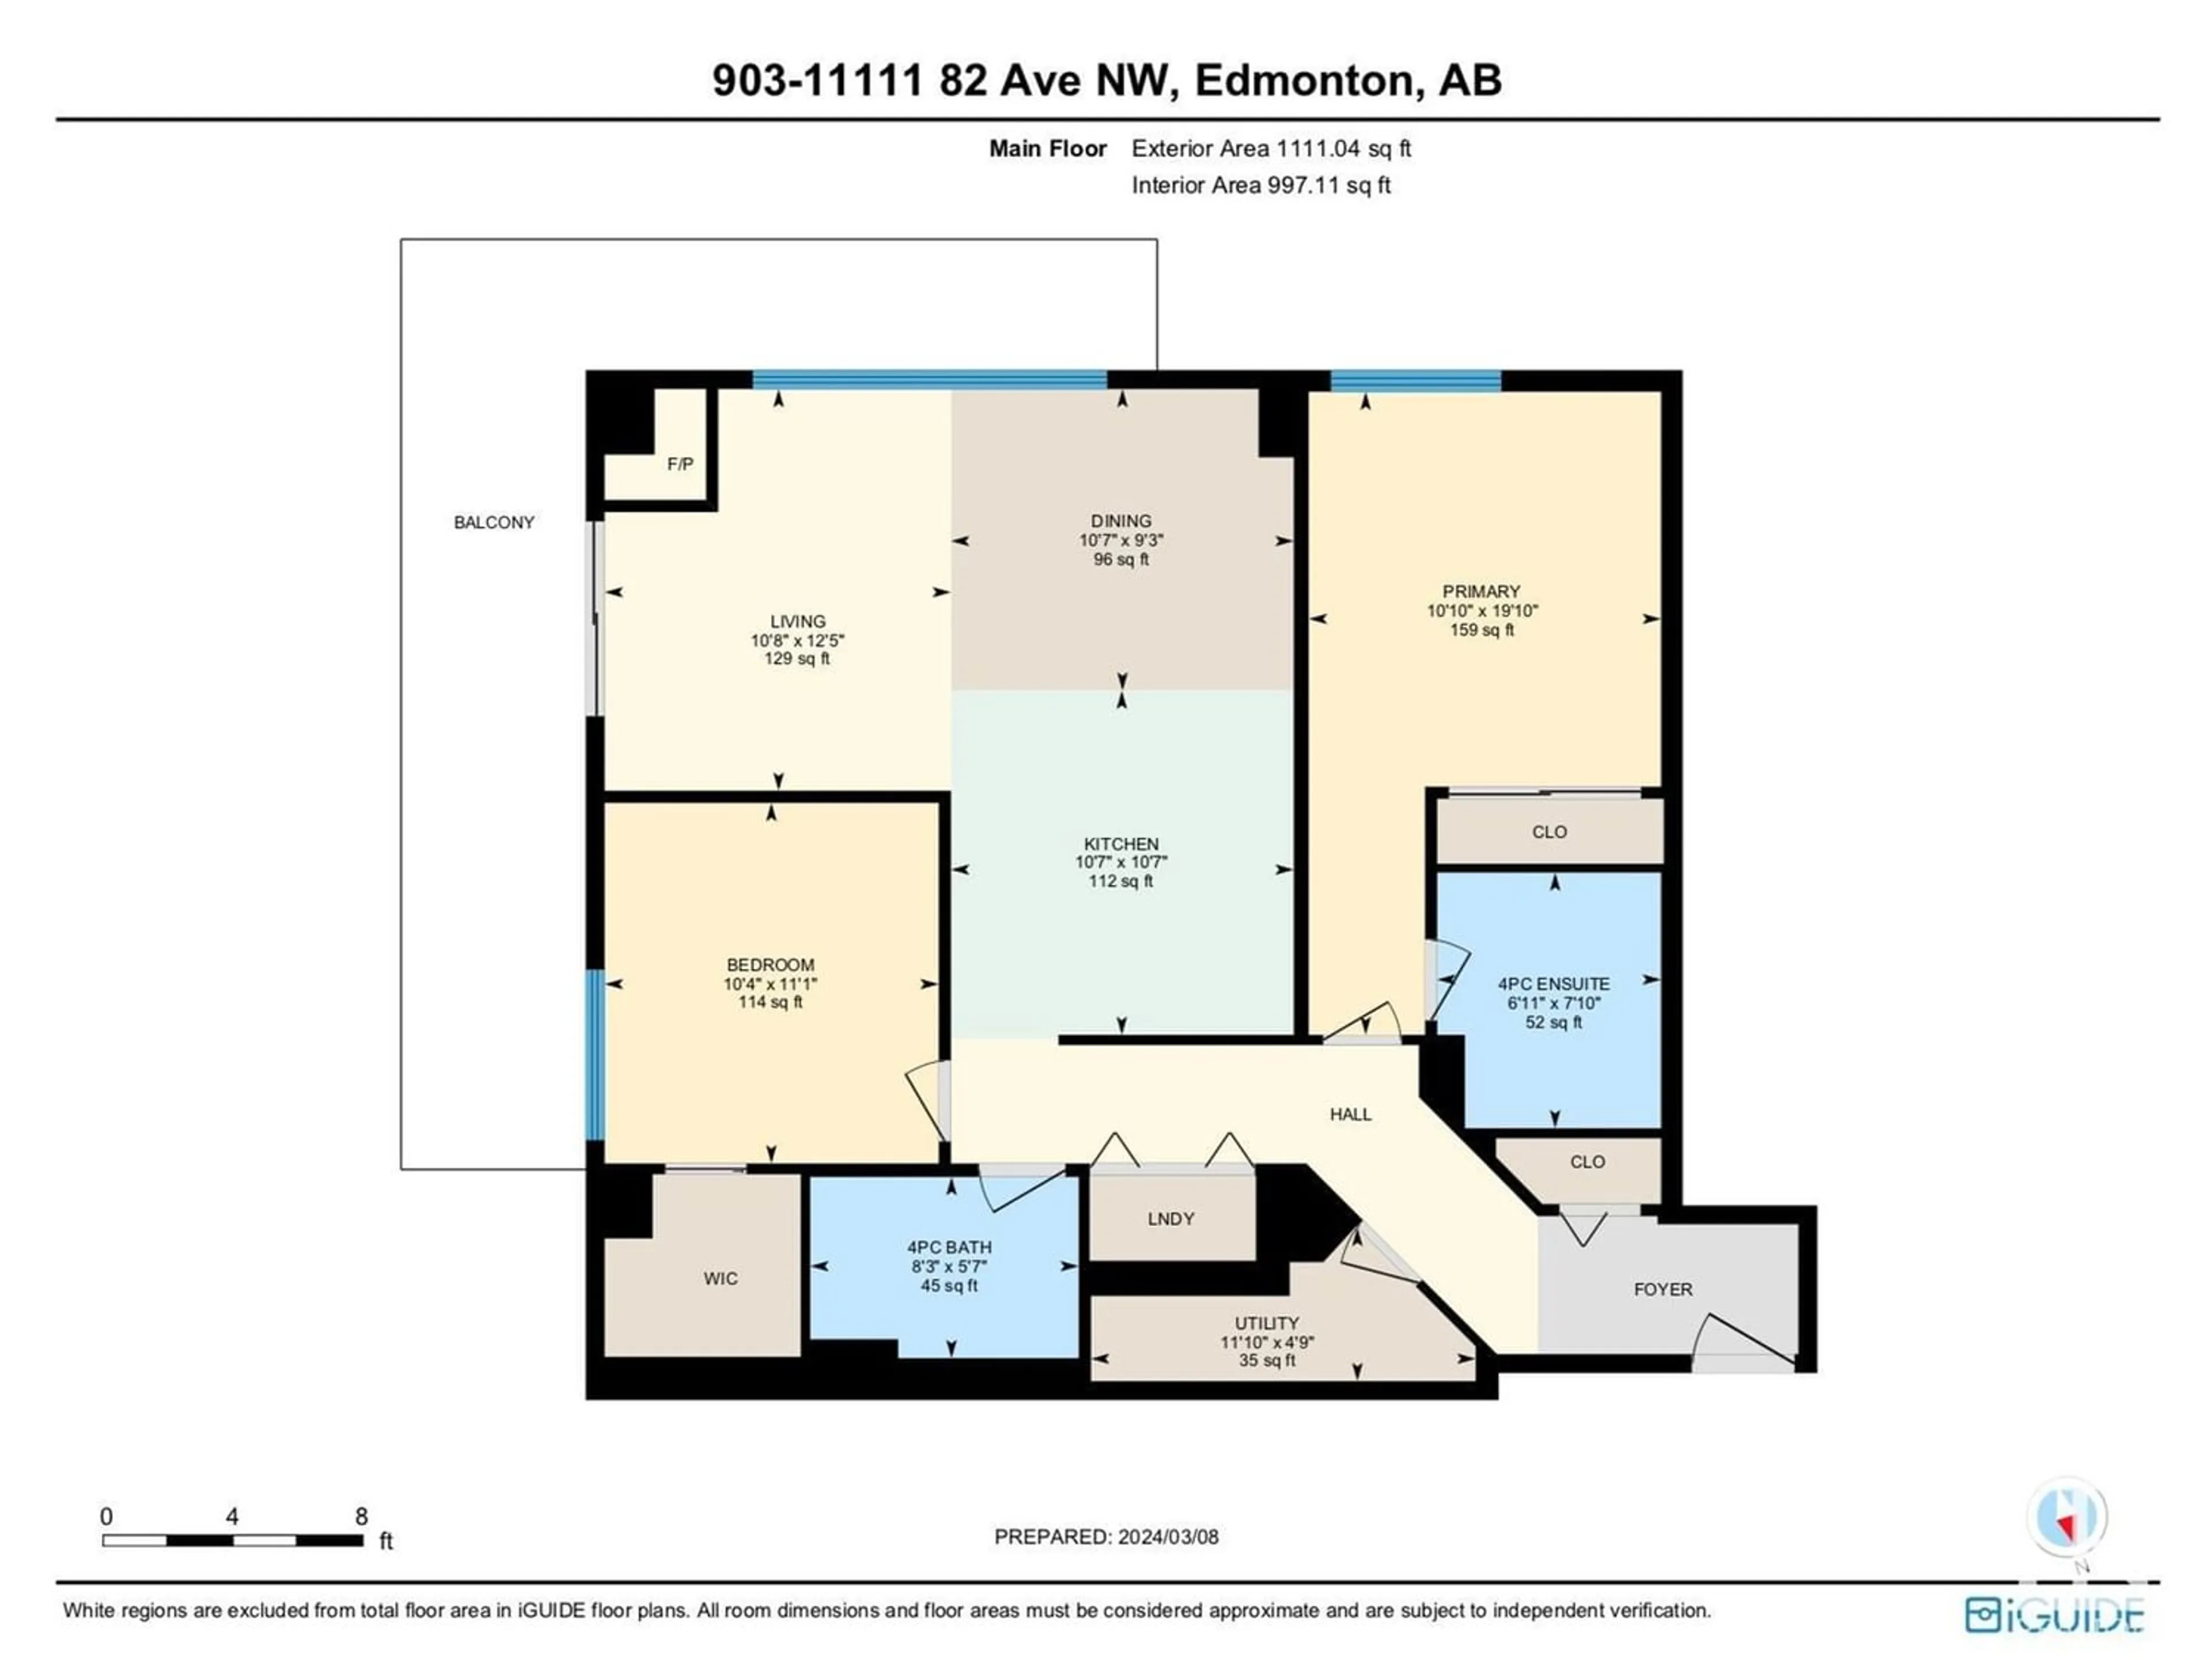 Floor plan for #903 11111 82 AV NW, Edmonton Alberta T6G0T3